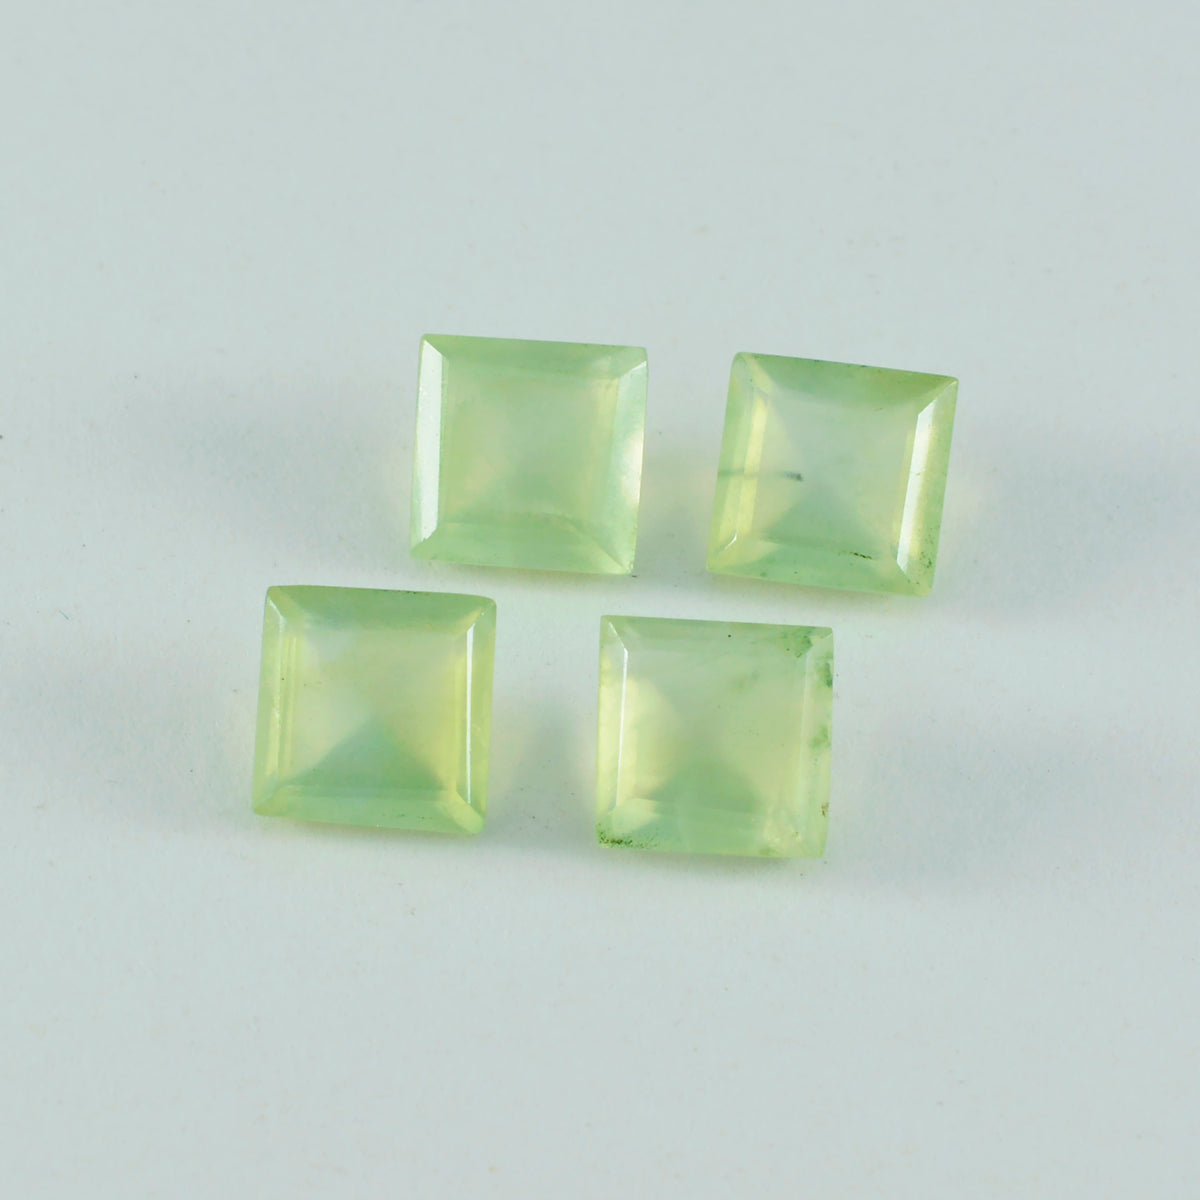 riyogems 1pc グリーン プレナイト ファセット 10x10 mm 正方形の形状のかなり品質のルースストーン